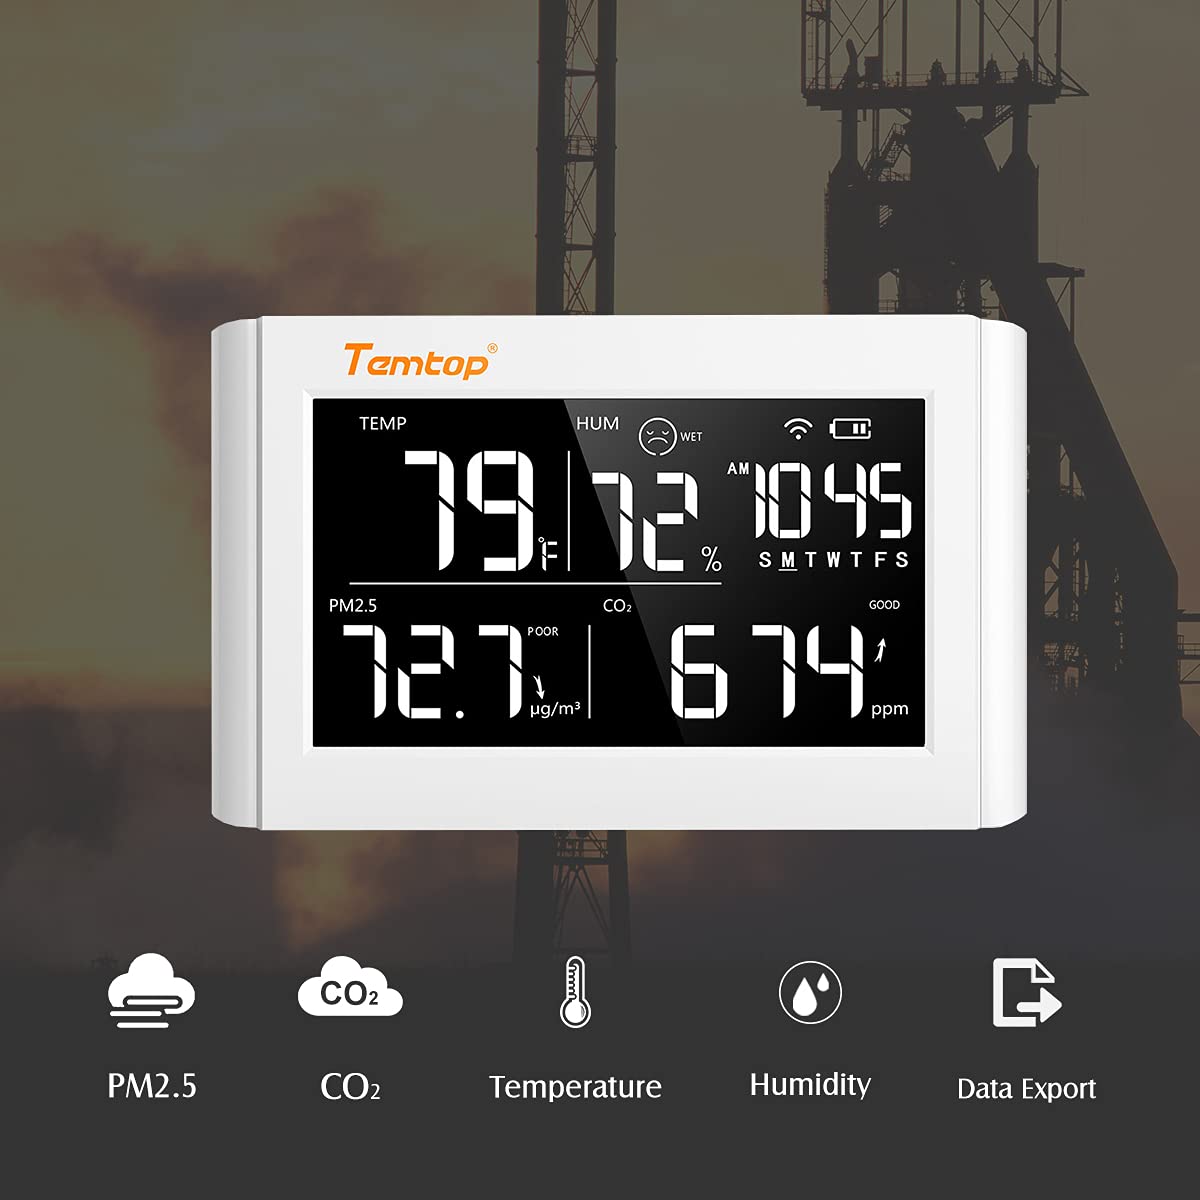 Temtop P20C Indoor Air Quality Monitor - Measure PM2.5 PM10 CO2 Temperature Humidity